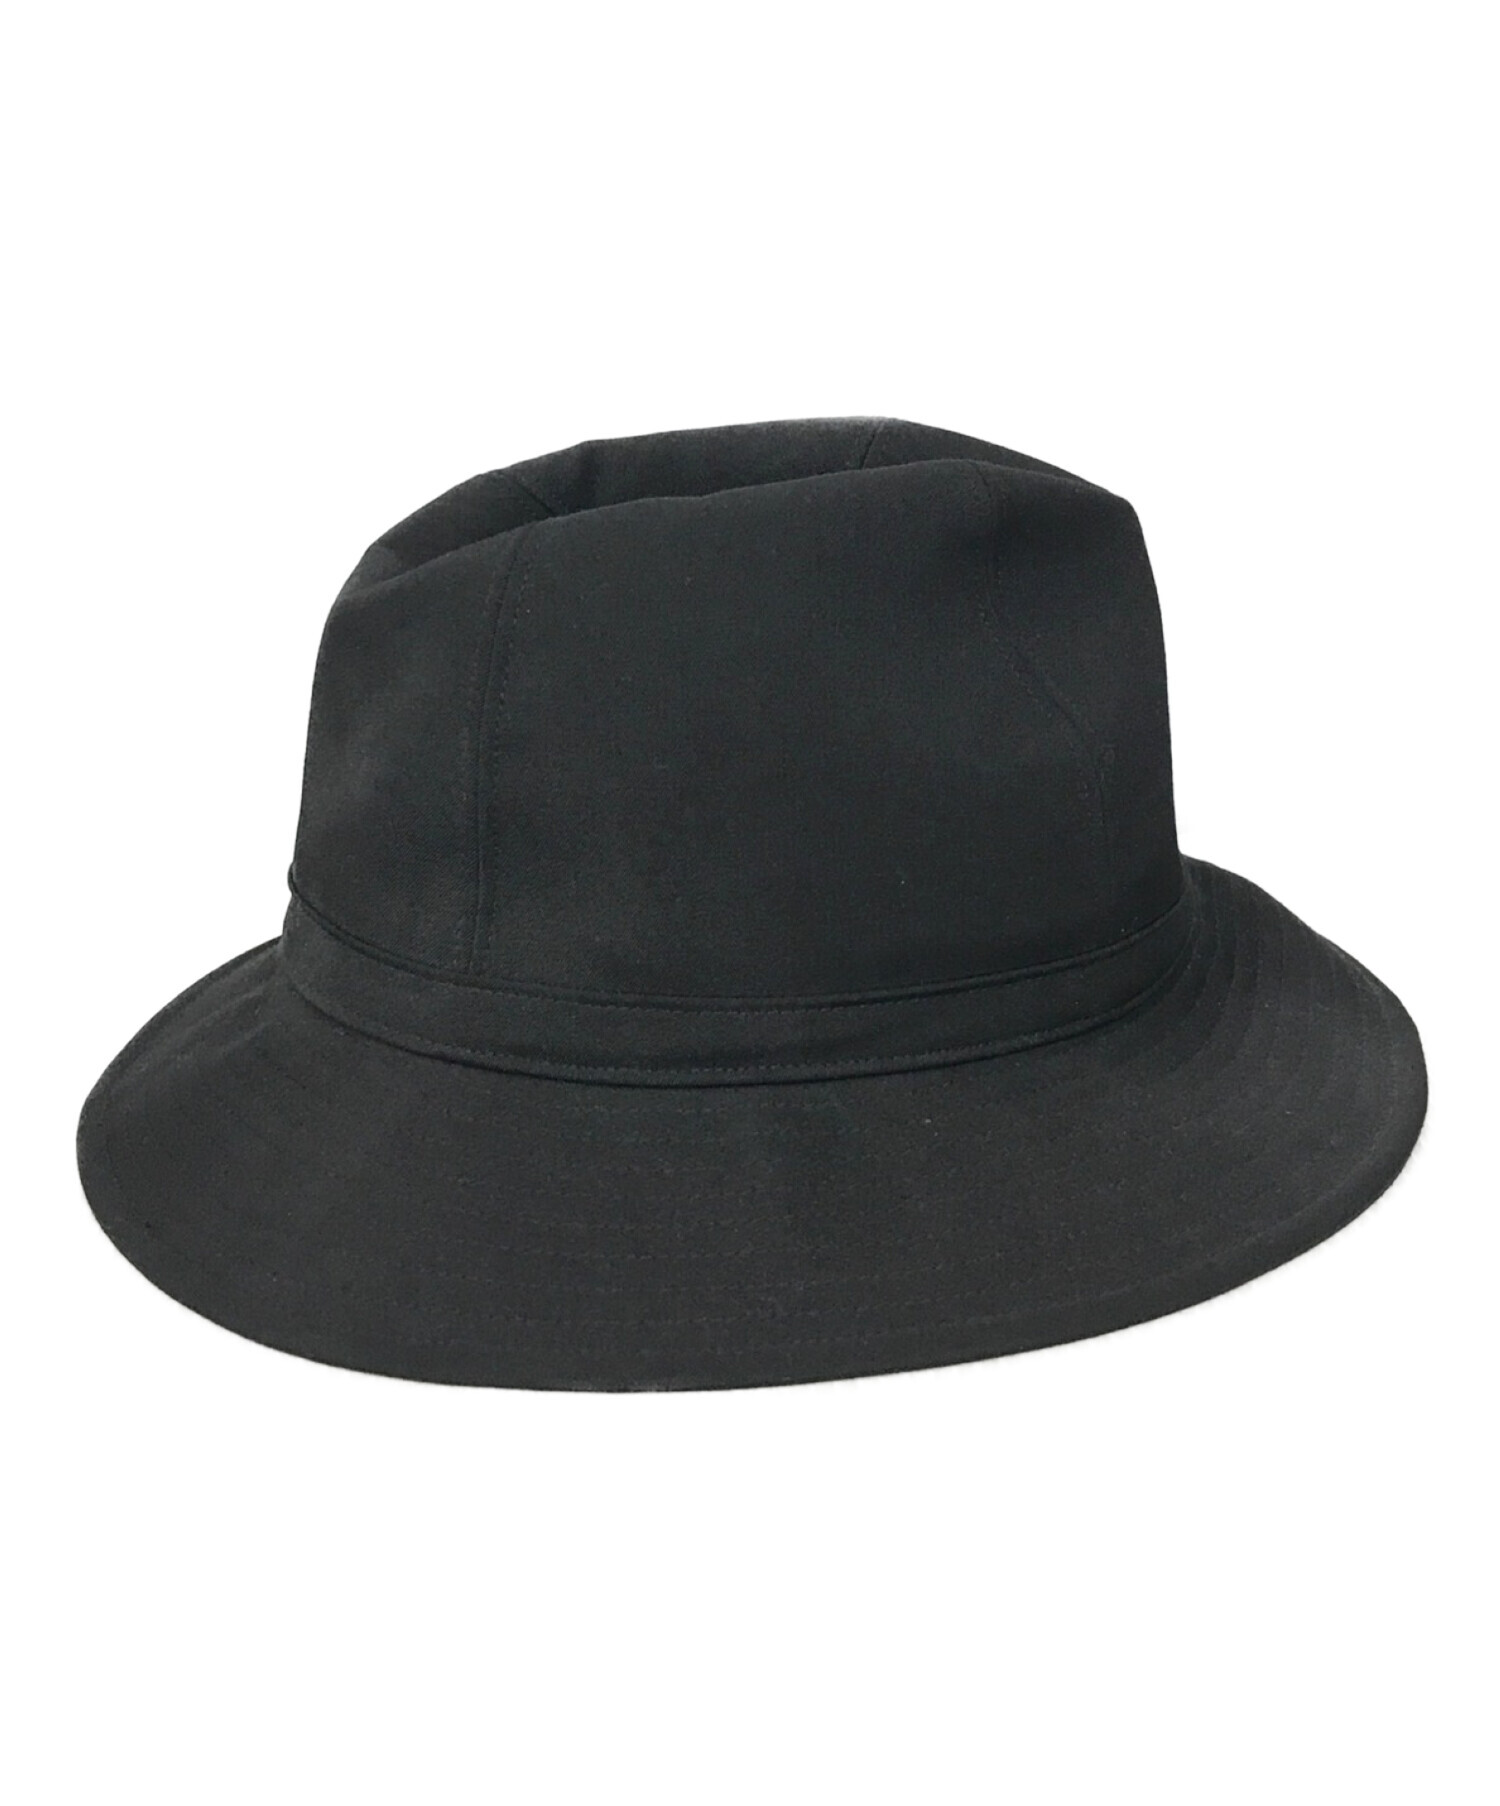 Yohji Yamamoto pour homme (ヨウジヤマモト プールオム) Wrinkled Gabardine Fedora hat  ブラック サイズ:SIZE 4